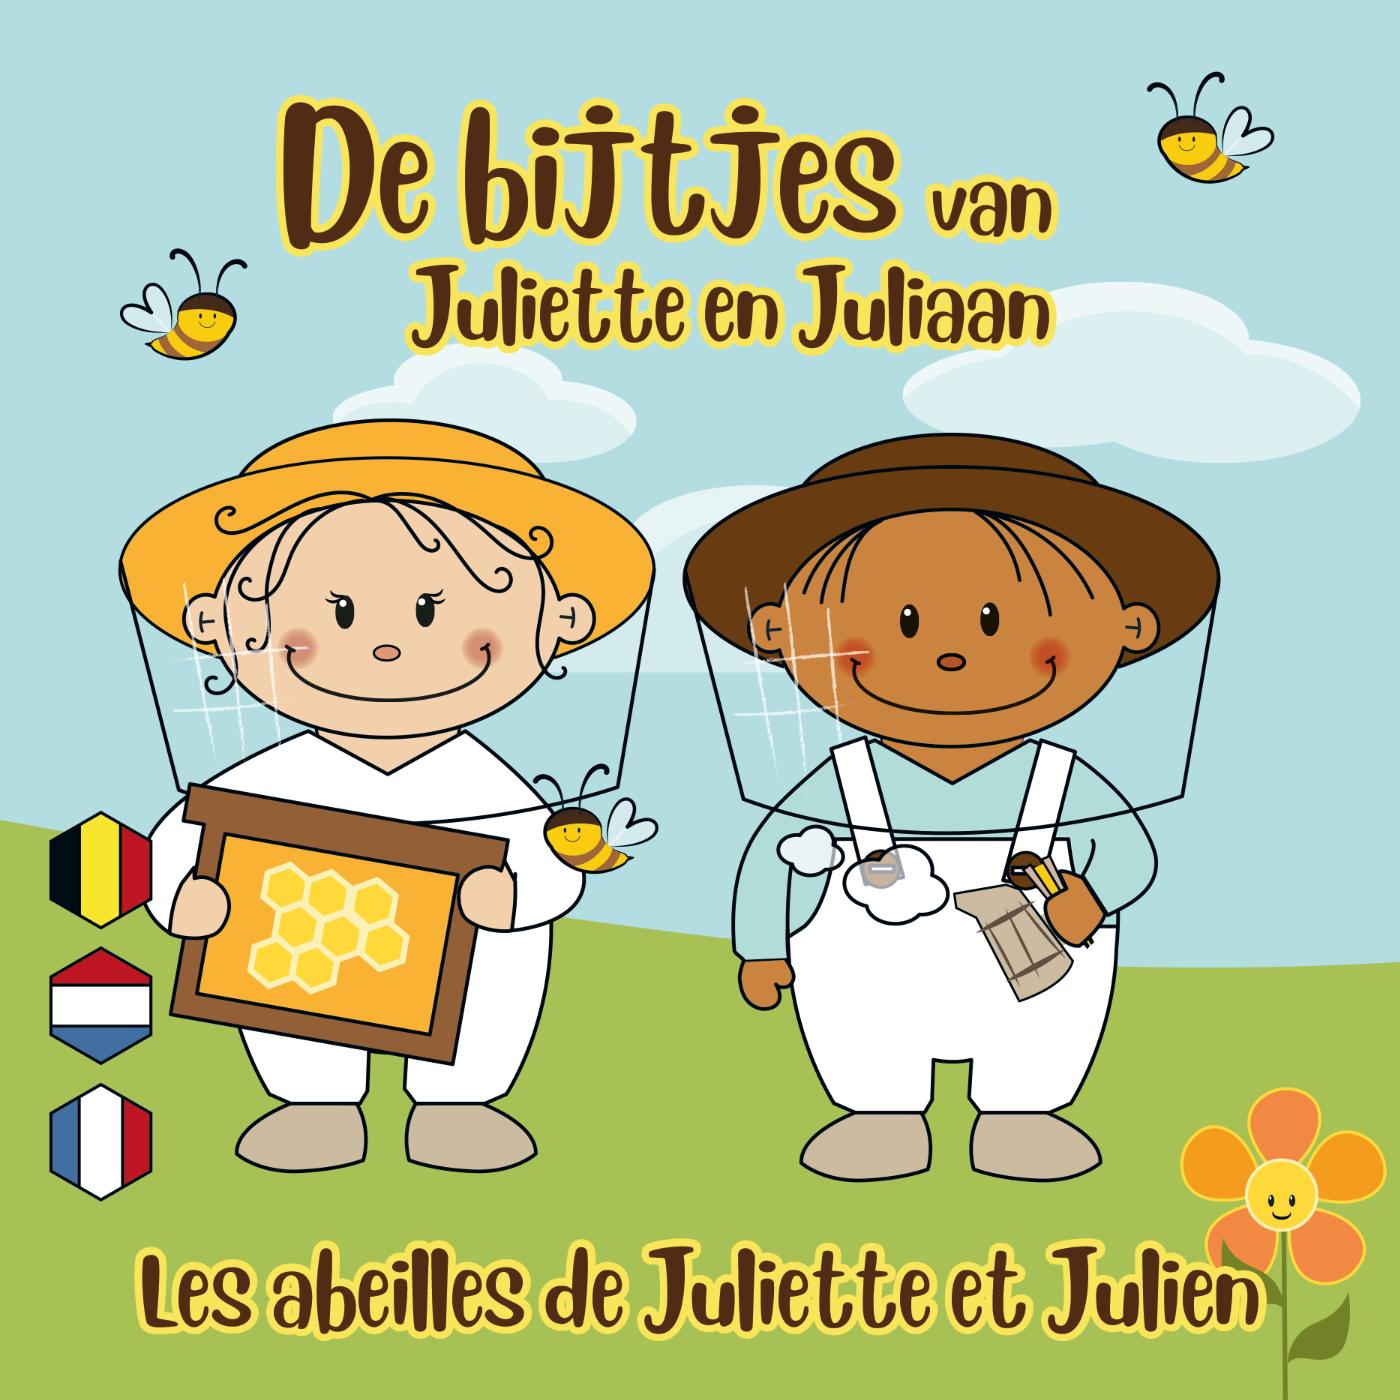 De bijtjes van Juliette en Juliaan (Ebook)